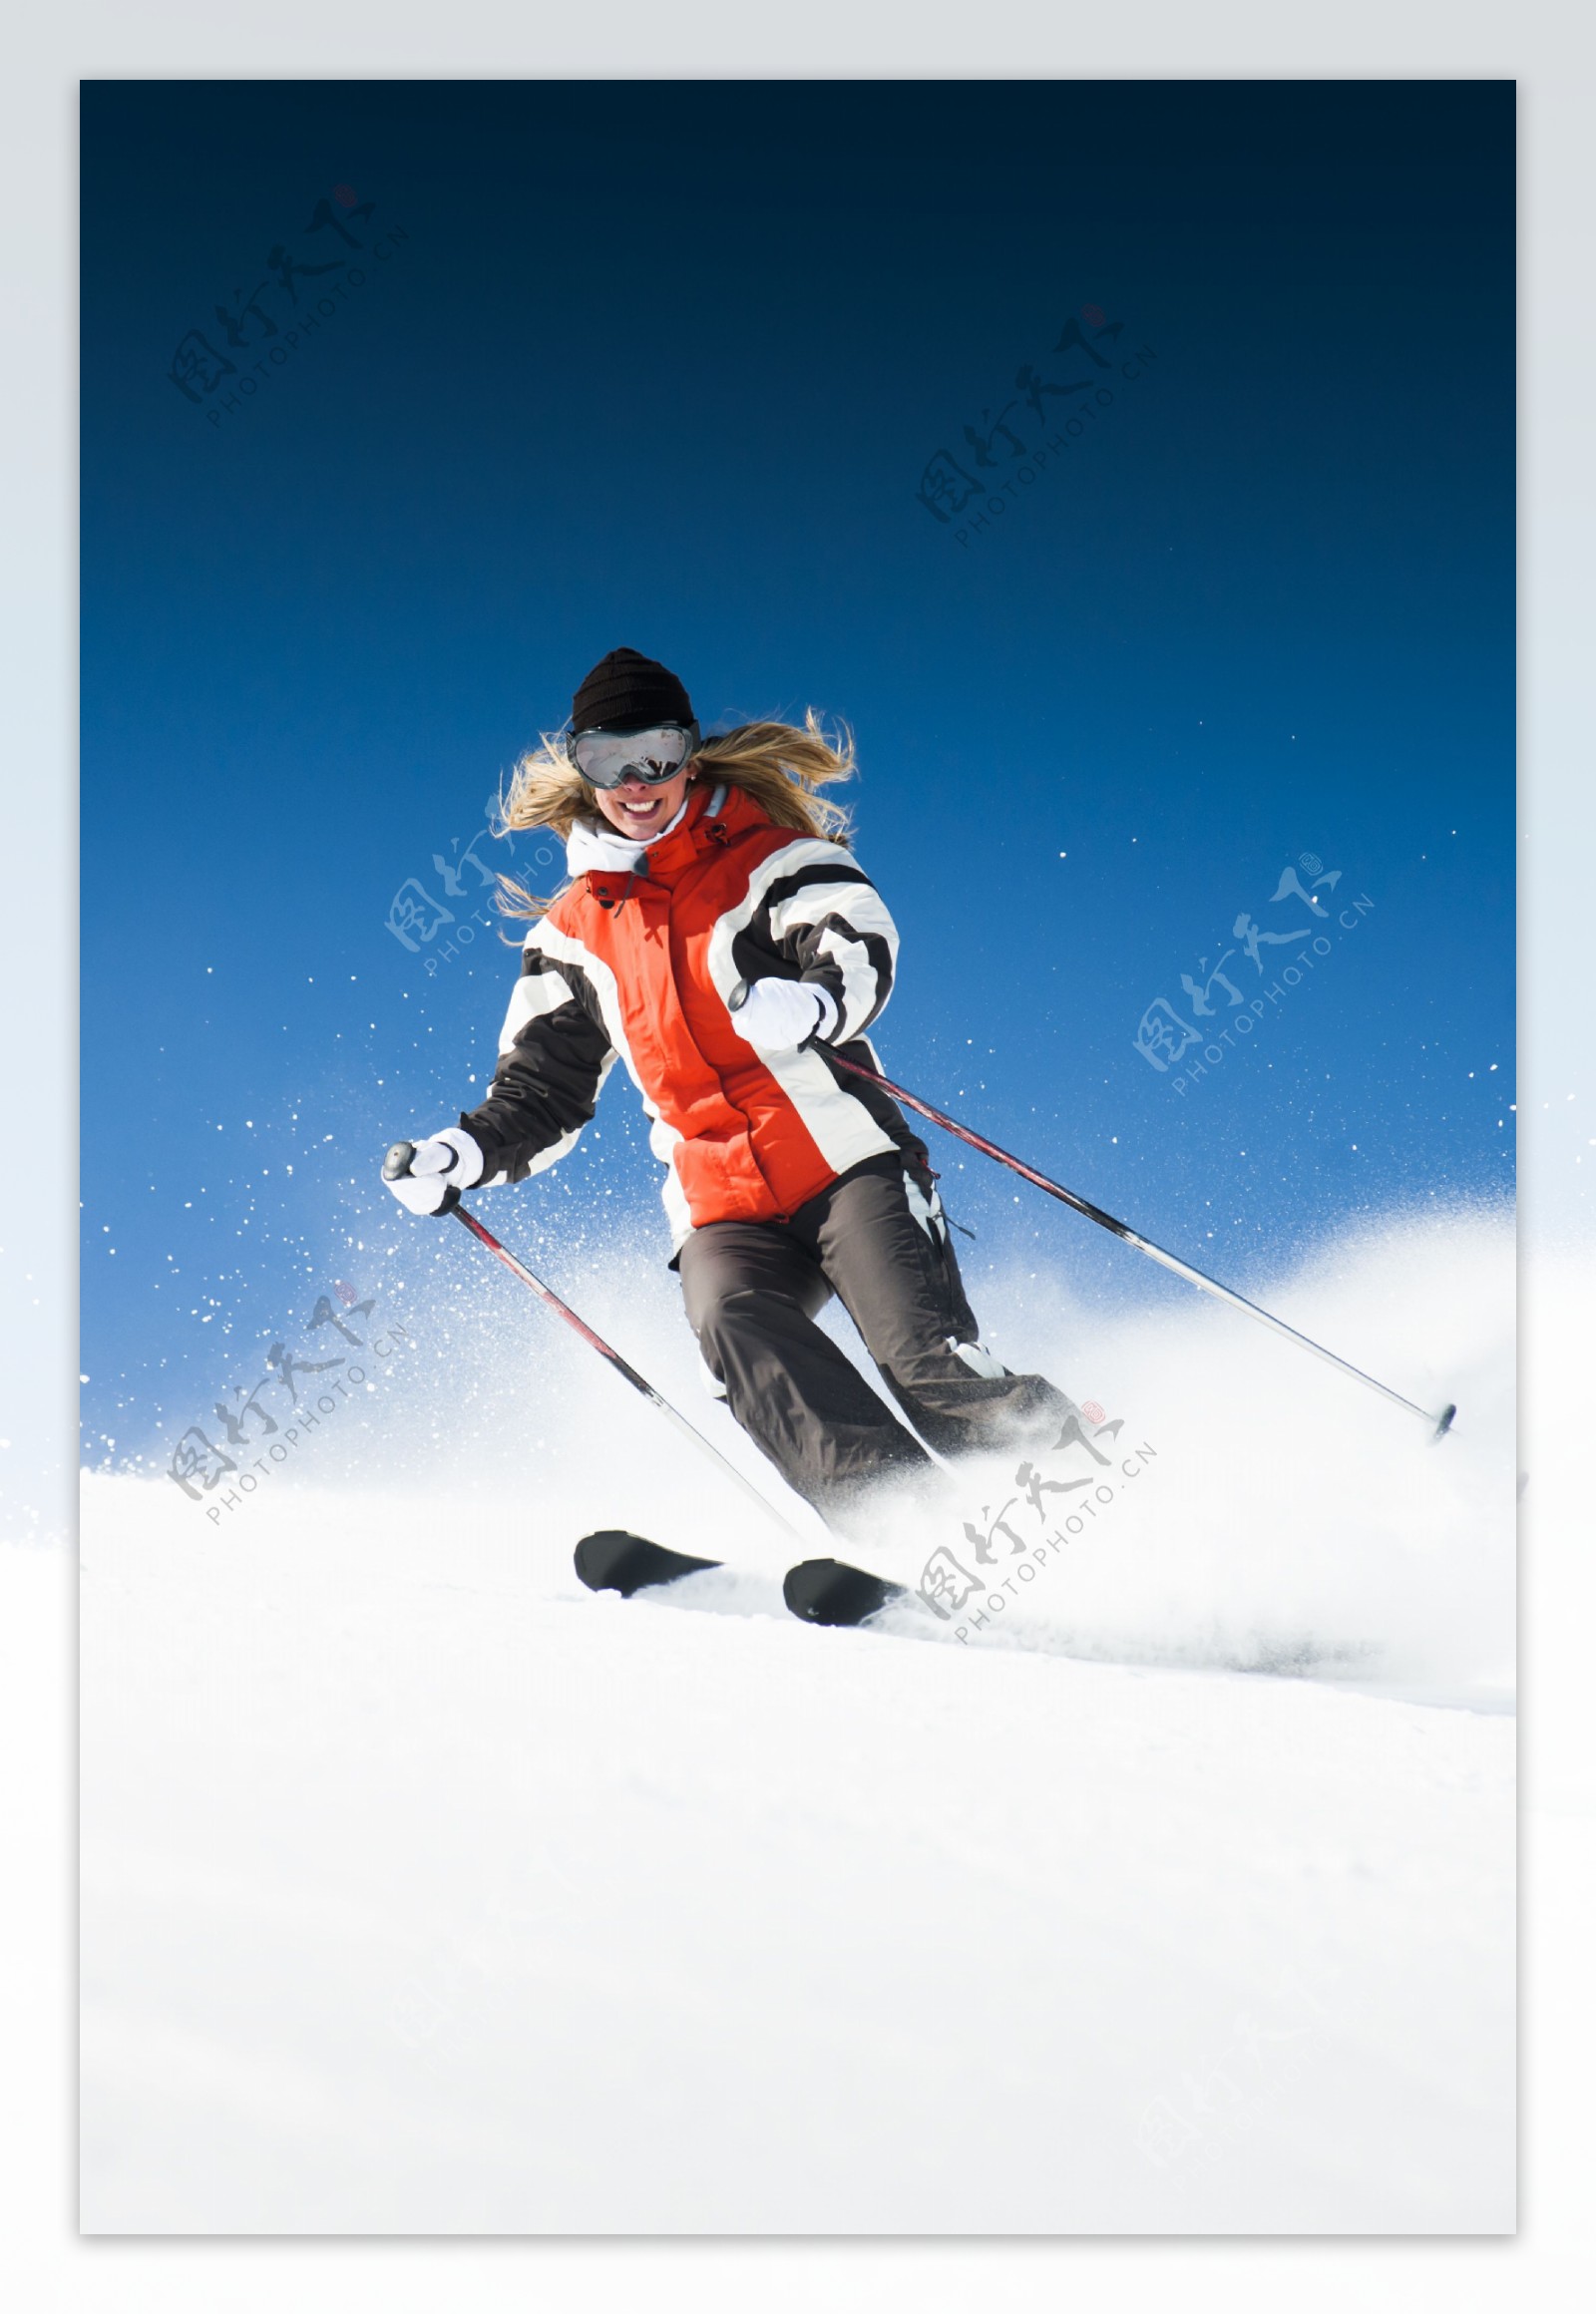 滑雪的人物图片